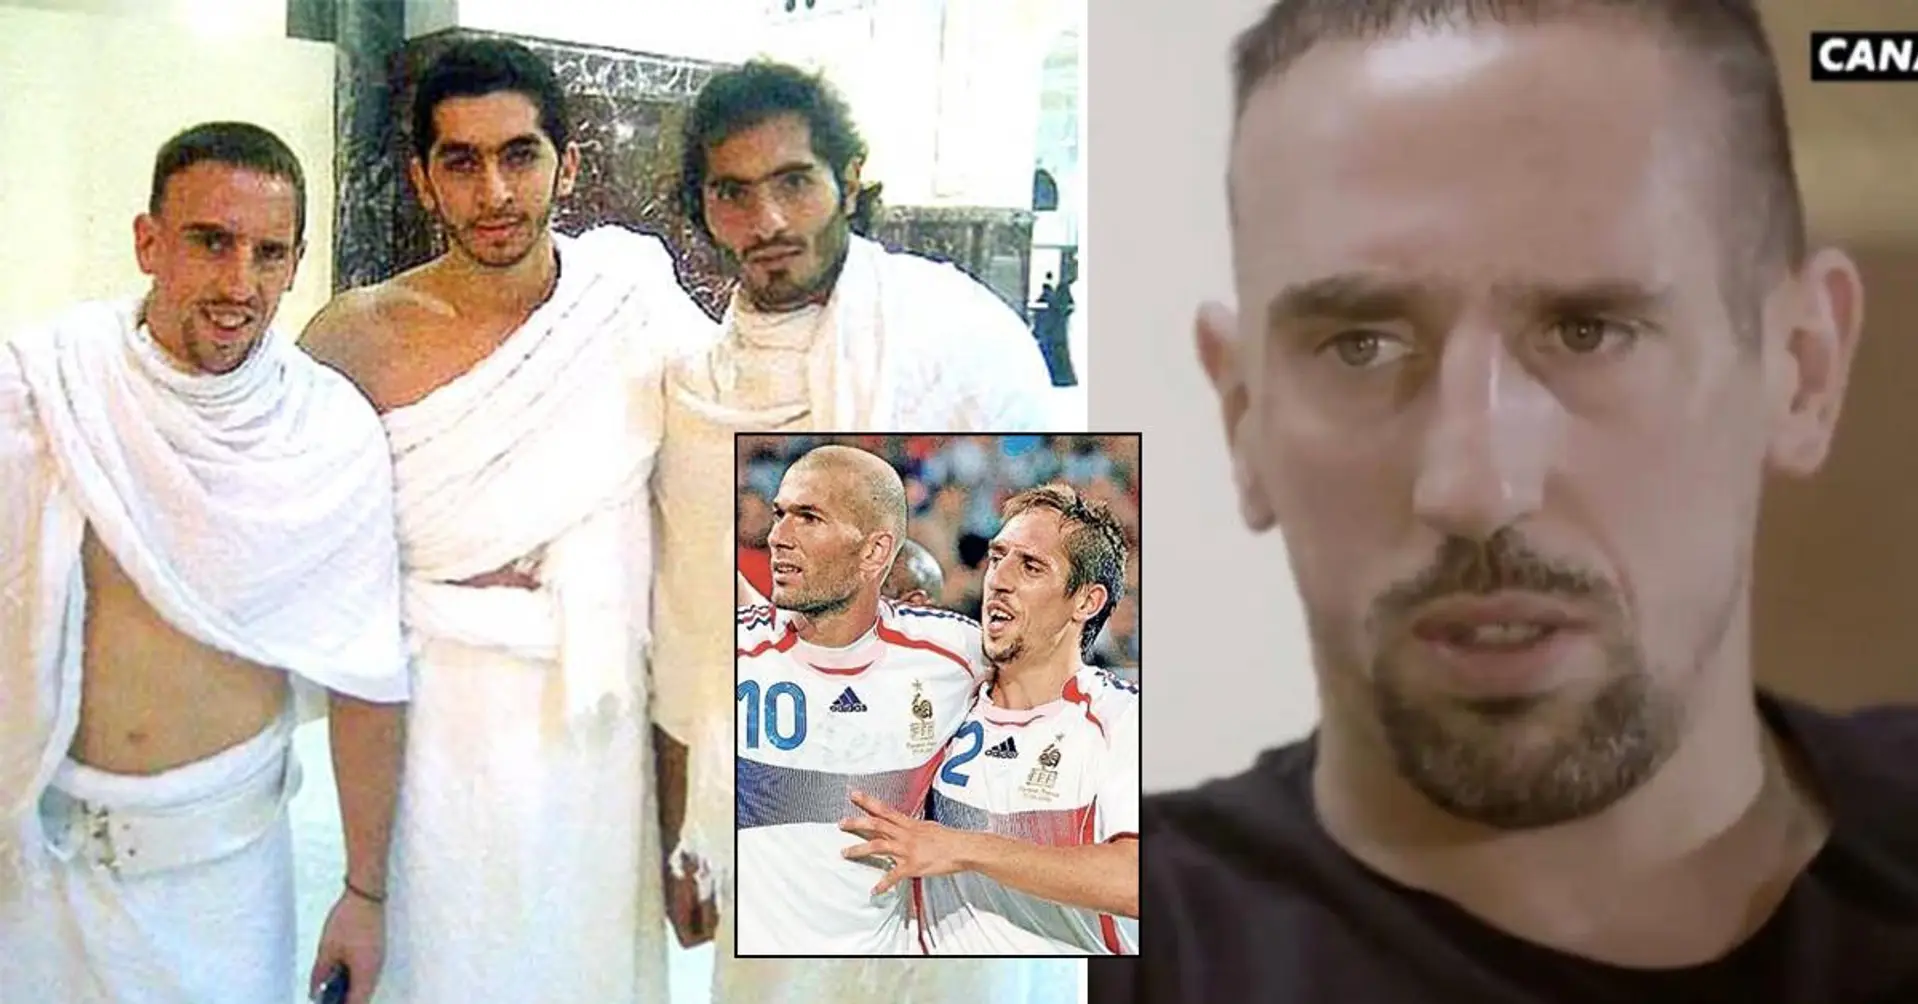 "Sono diventato più forte". Il motivo per cui la star francese Franck Ribery si è convertita dal cristianesimo all'Islam